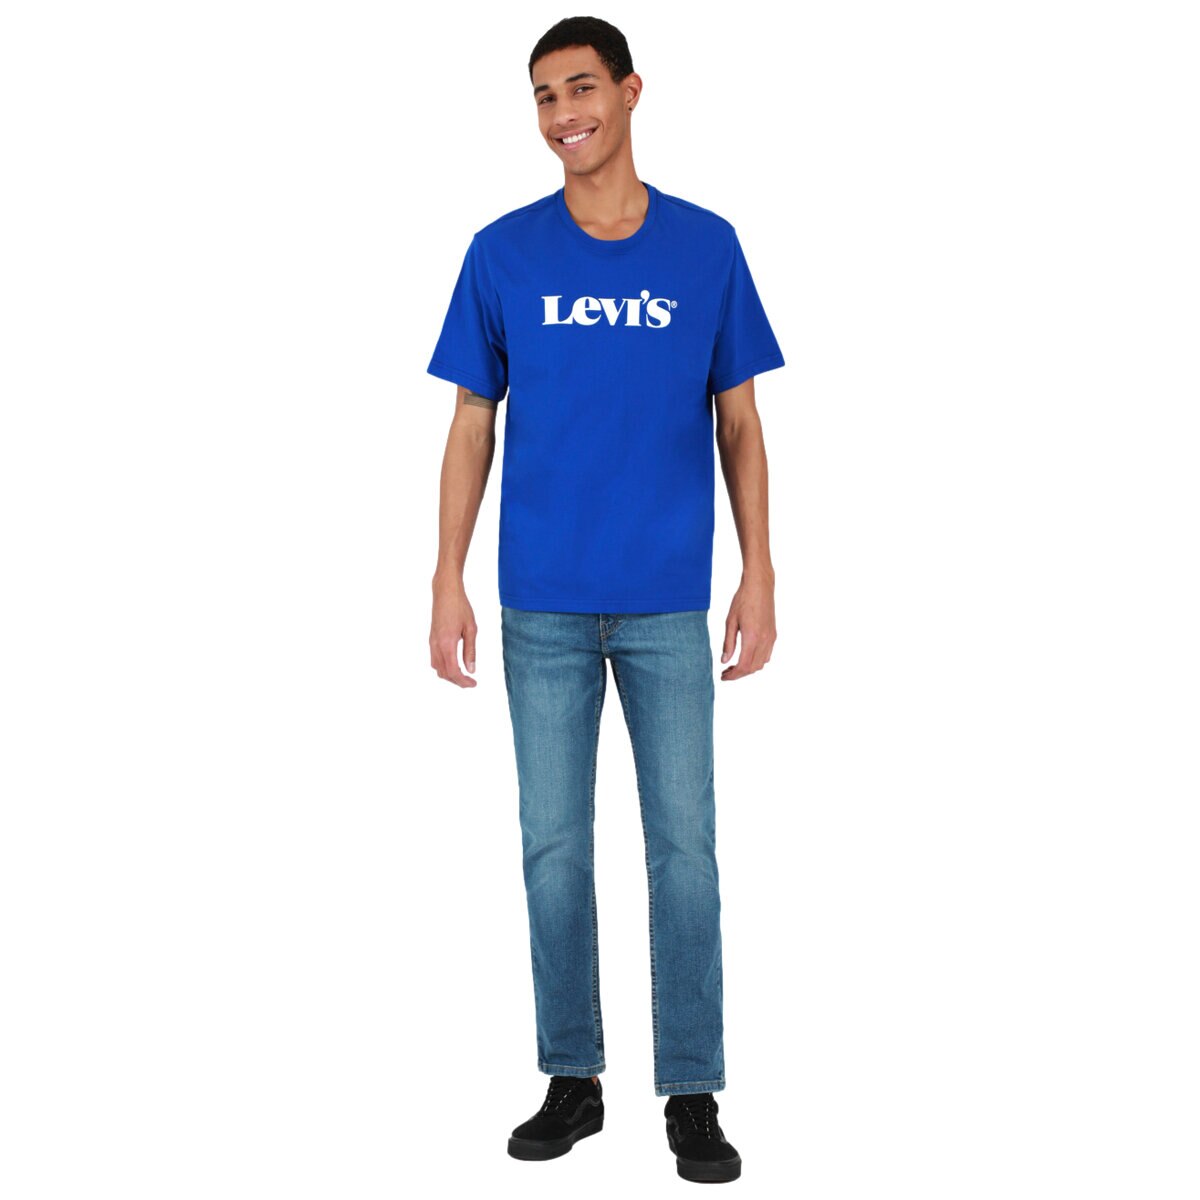 Levis Jeans para Caballero  Varias Tallas y Colores